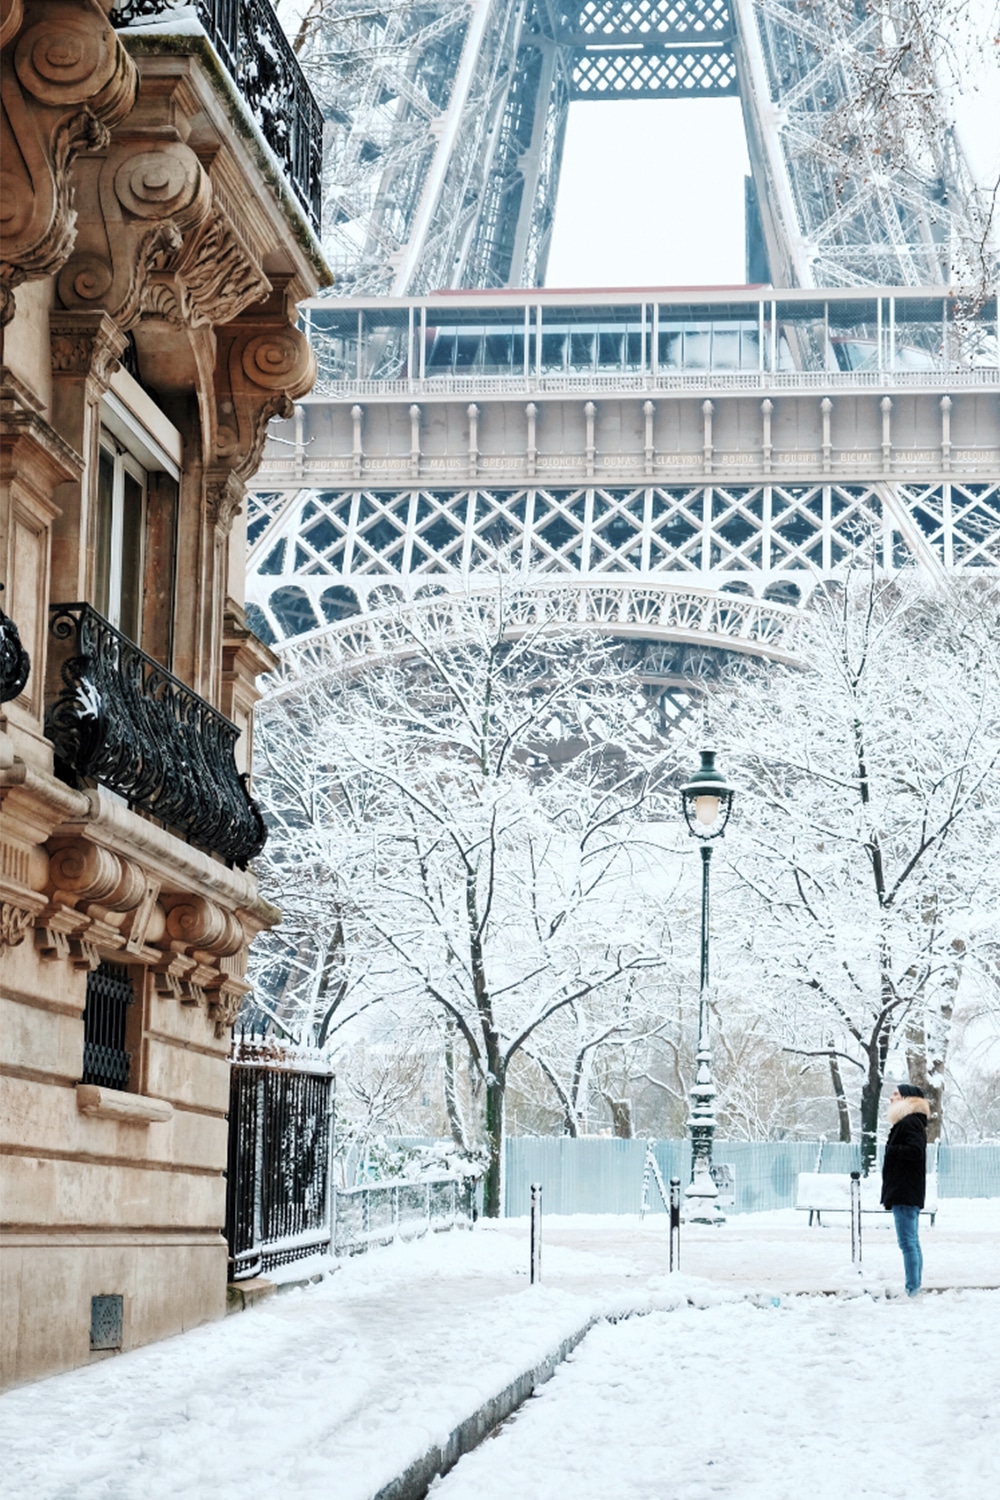 Les images de la neige à Paris et en Île-de-France